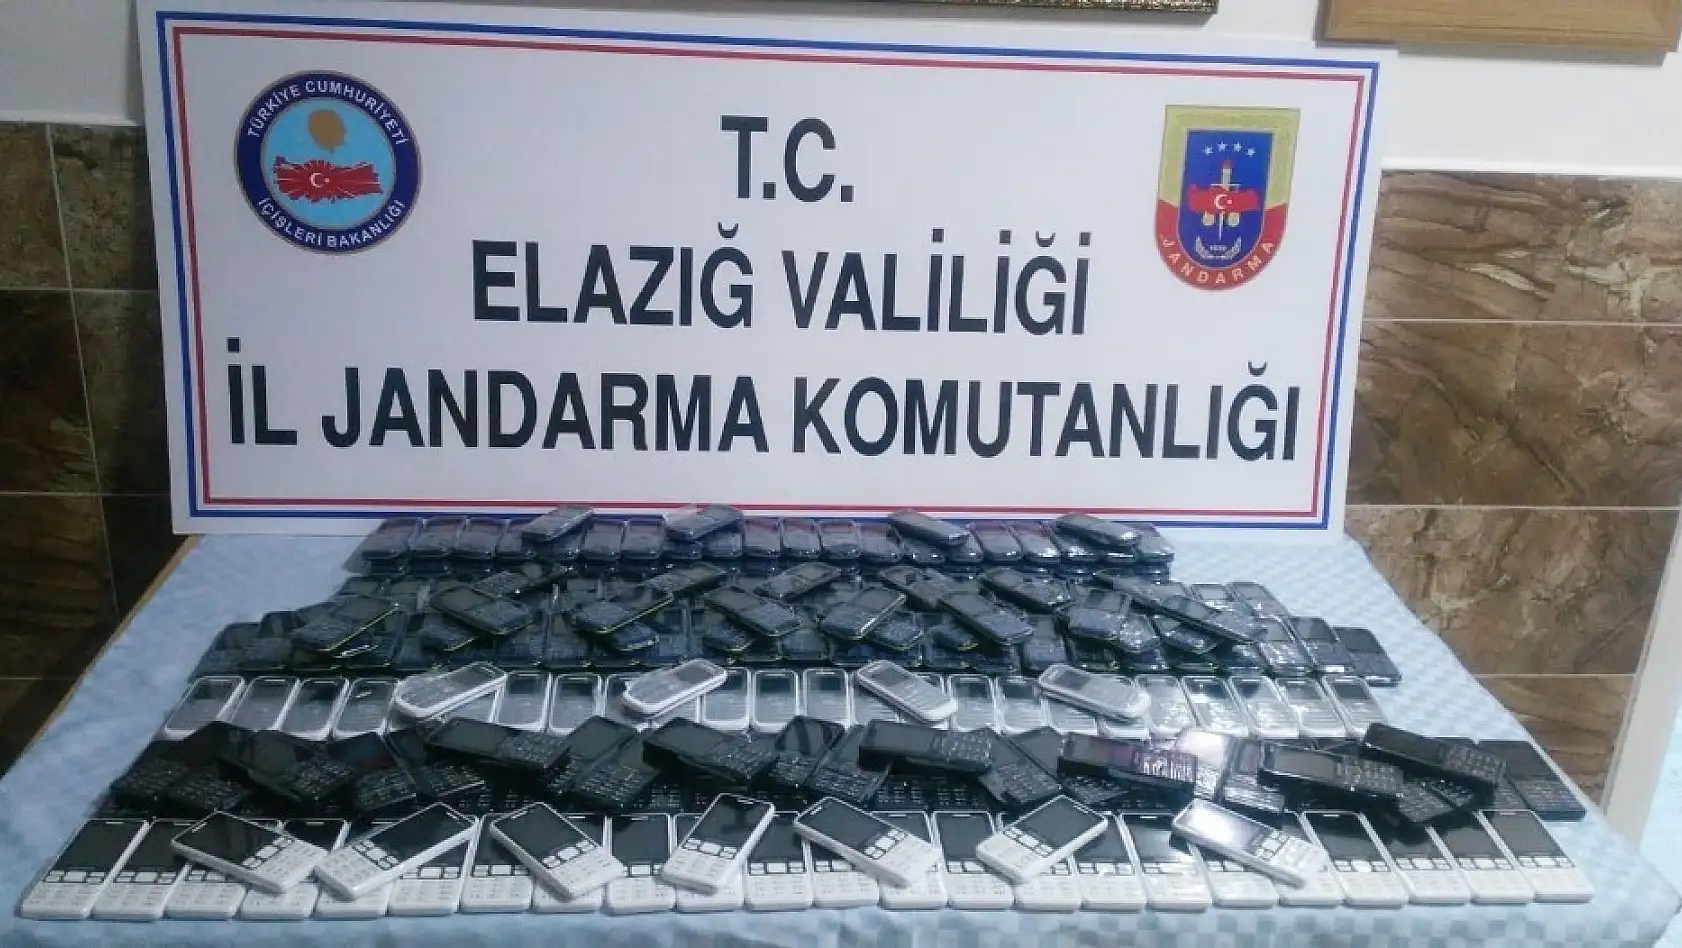 Elazığ'da 239 adet kaçak cep telefonu ele geçirildi 